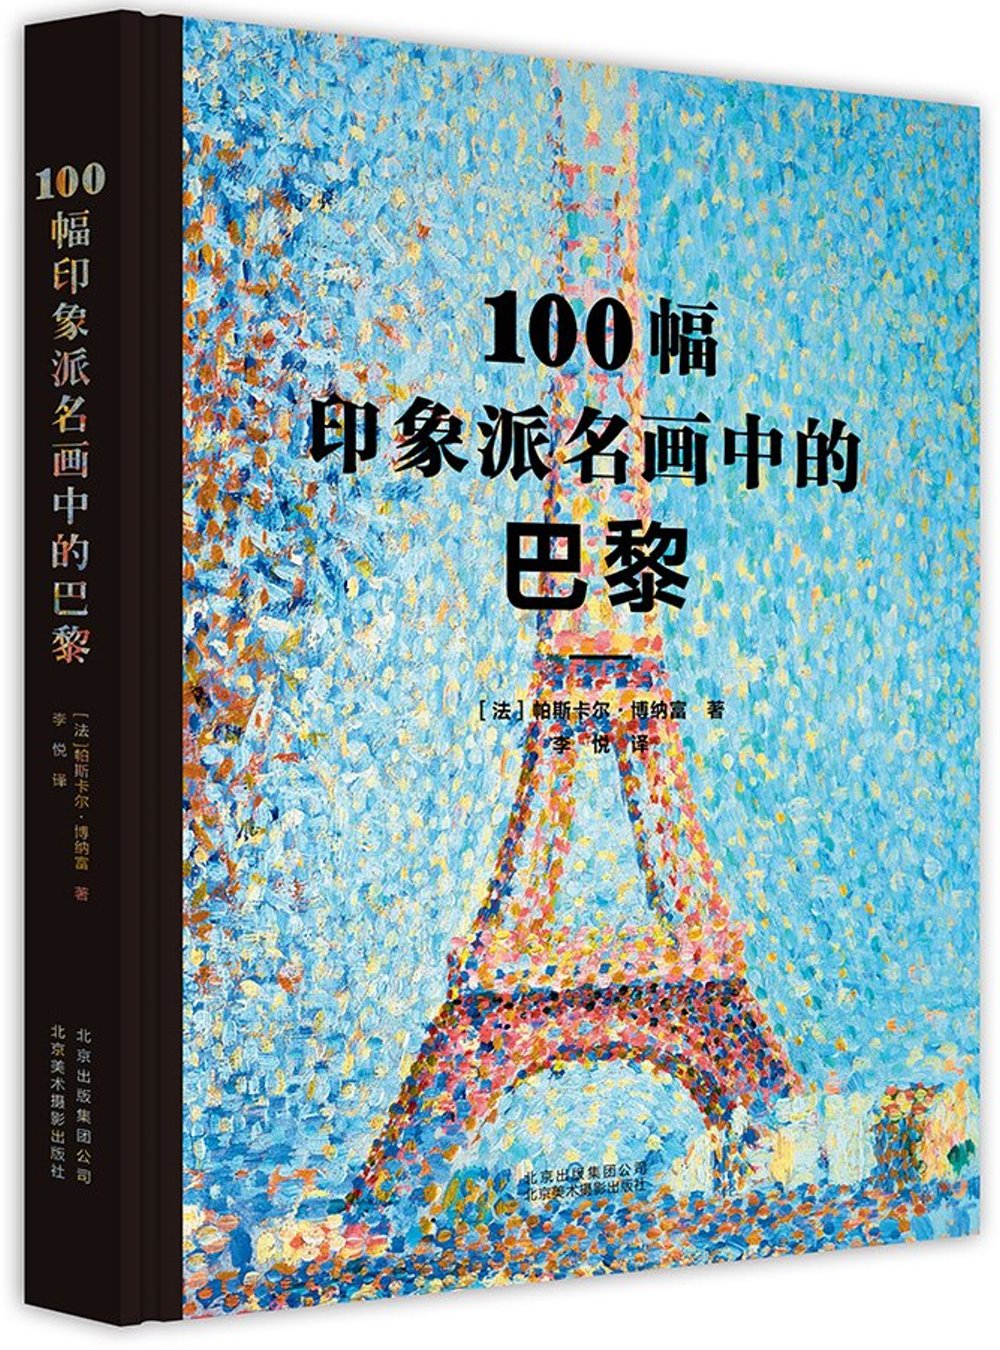 100幅印象派名畫中的巴黎